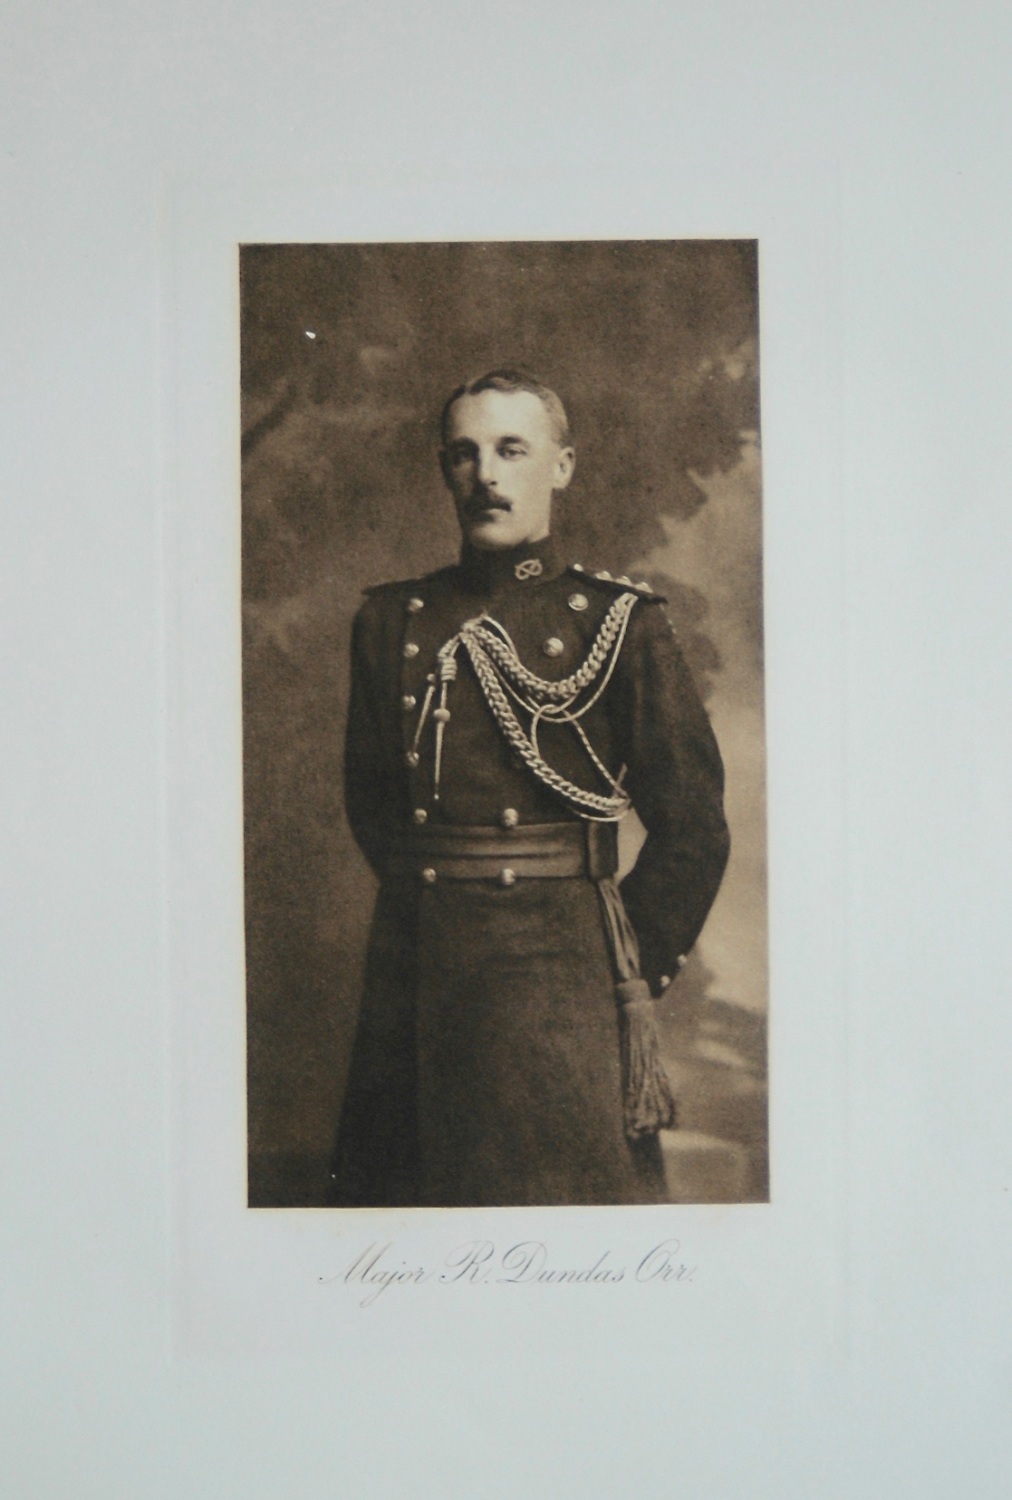 Major R. Dundas  Orr.